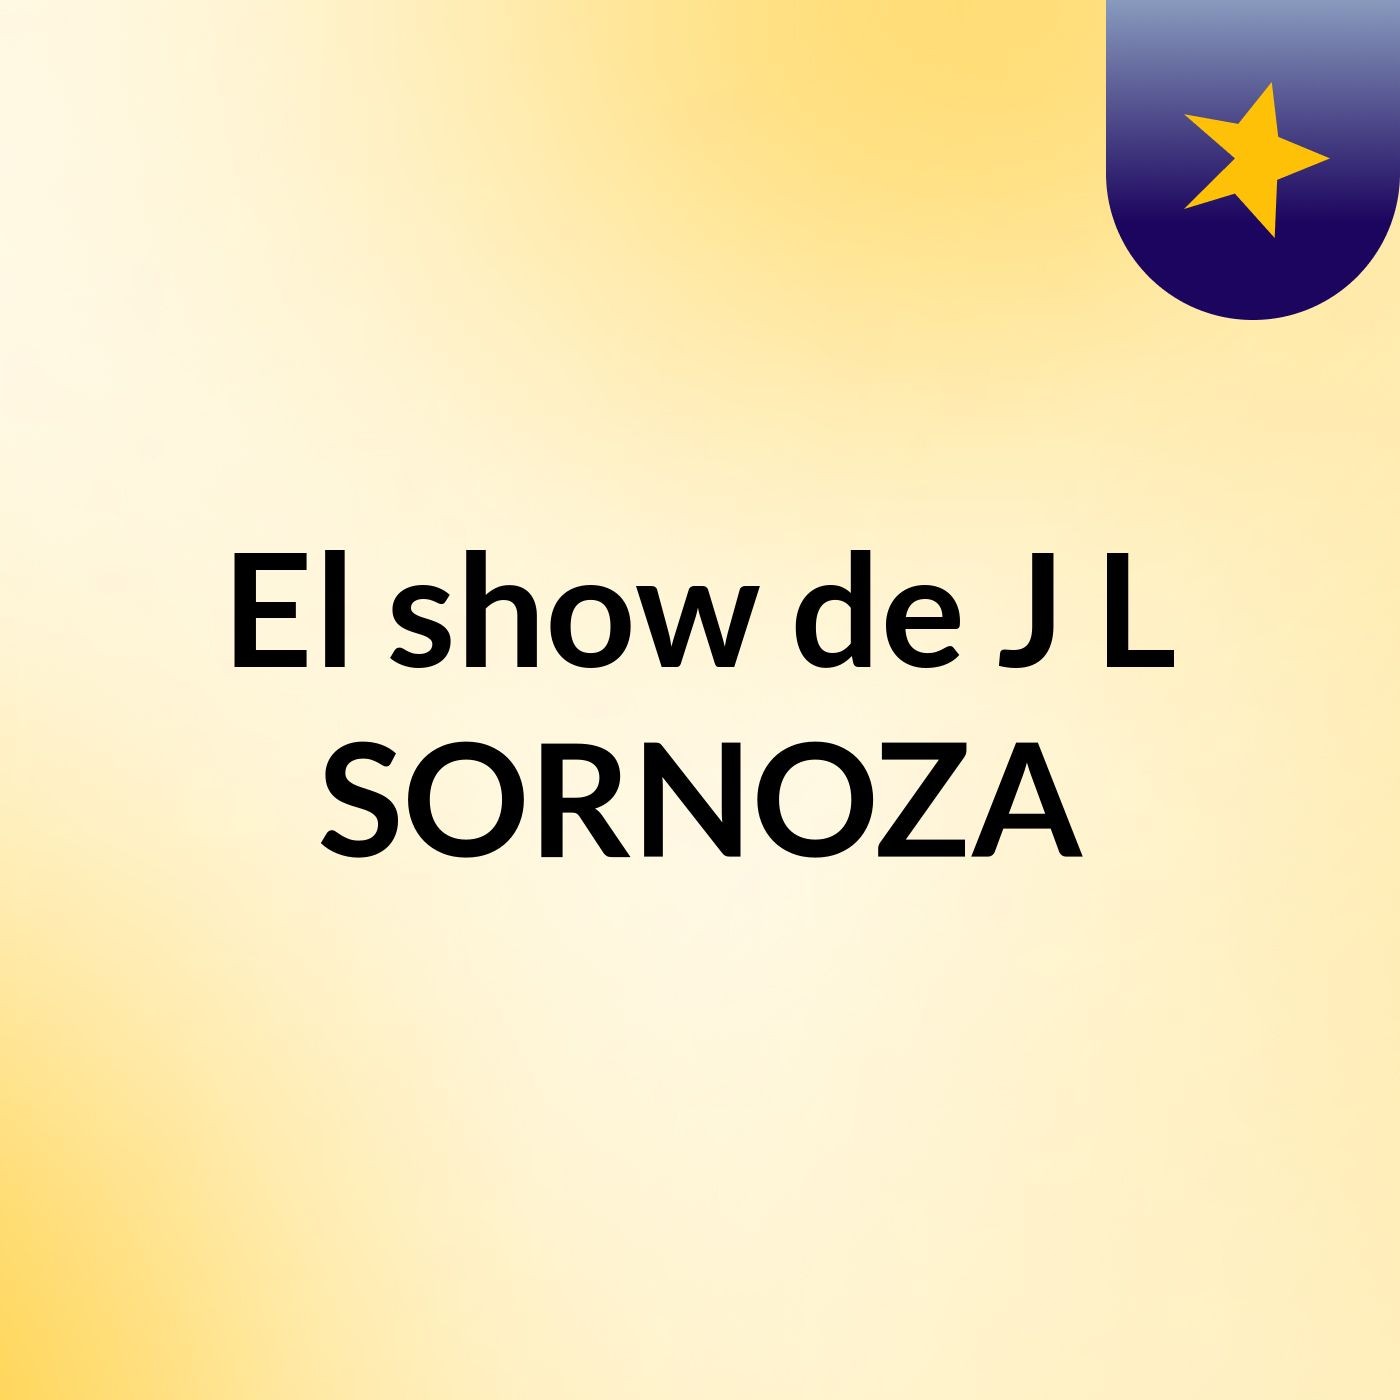 El show de J L SORNOZA